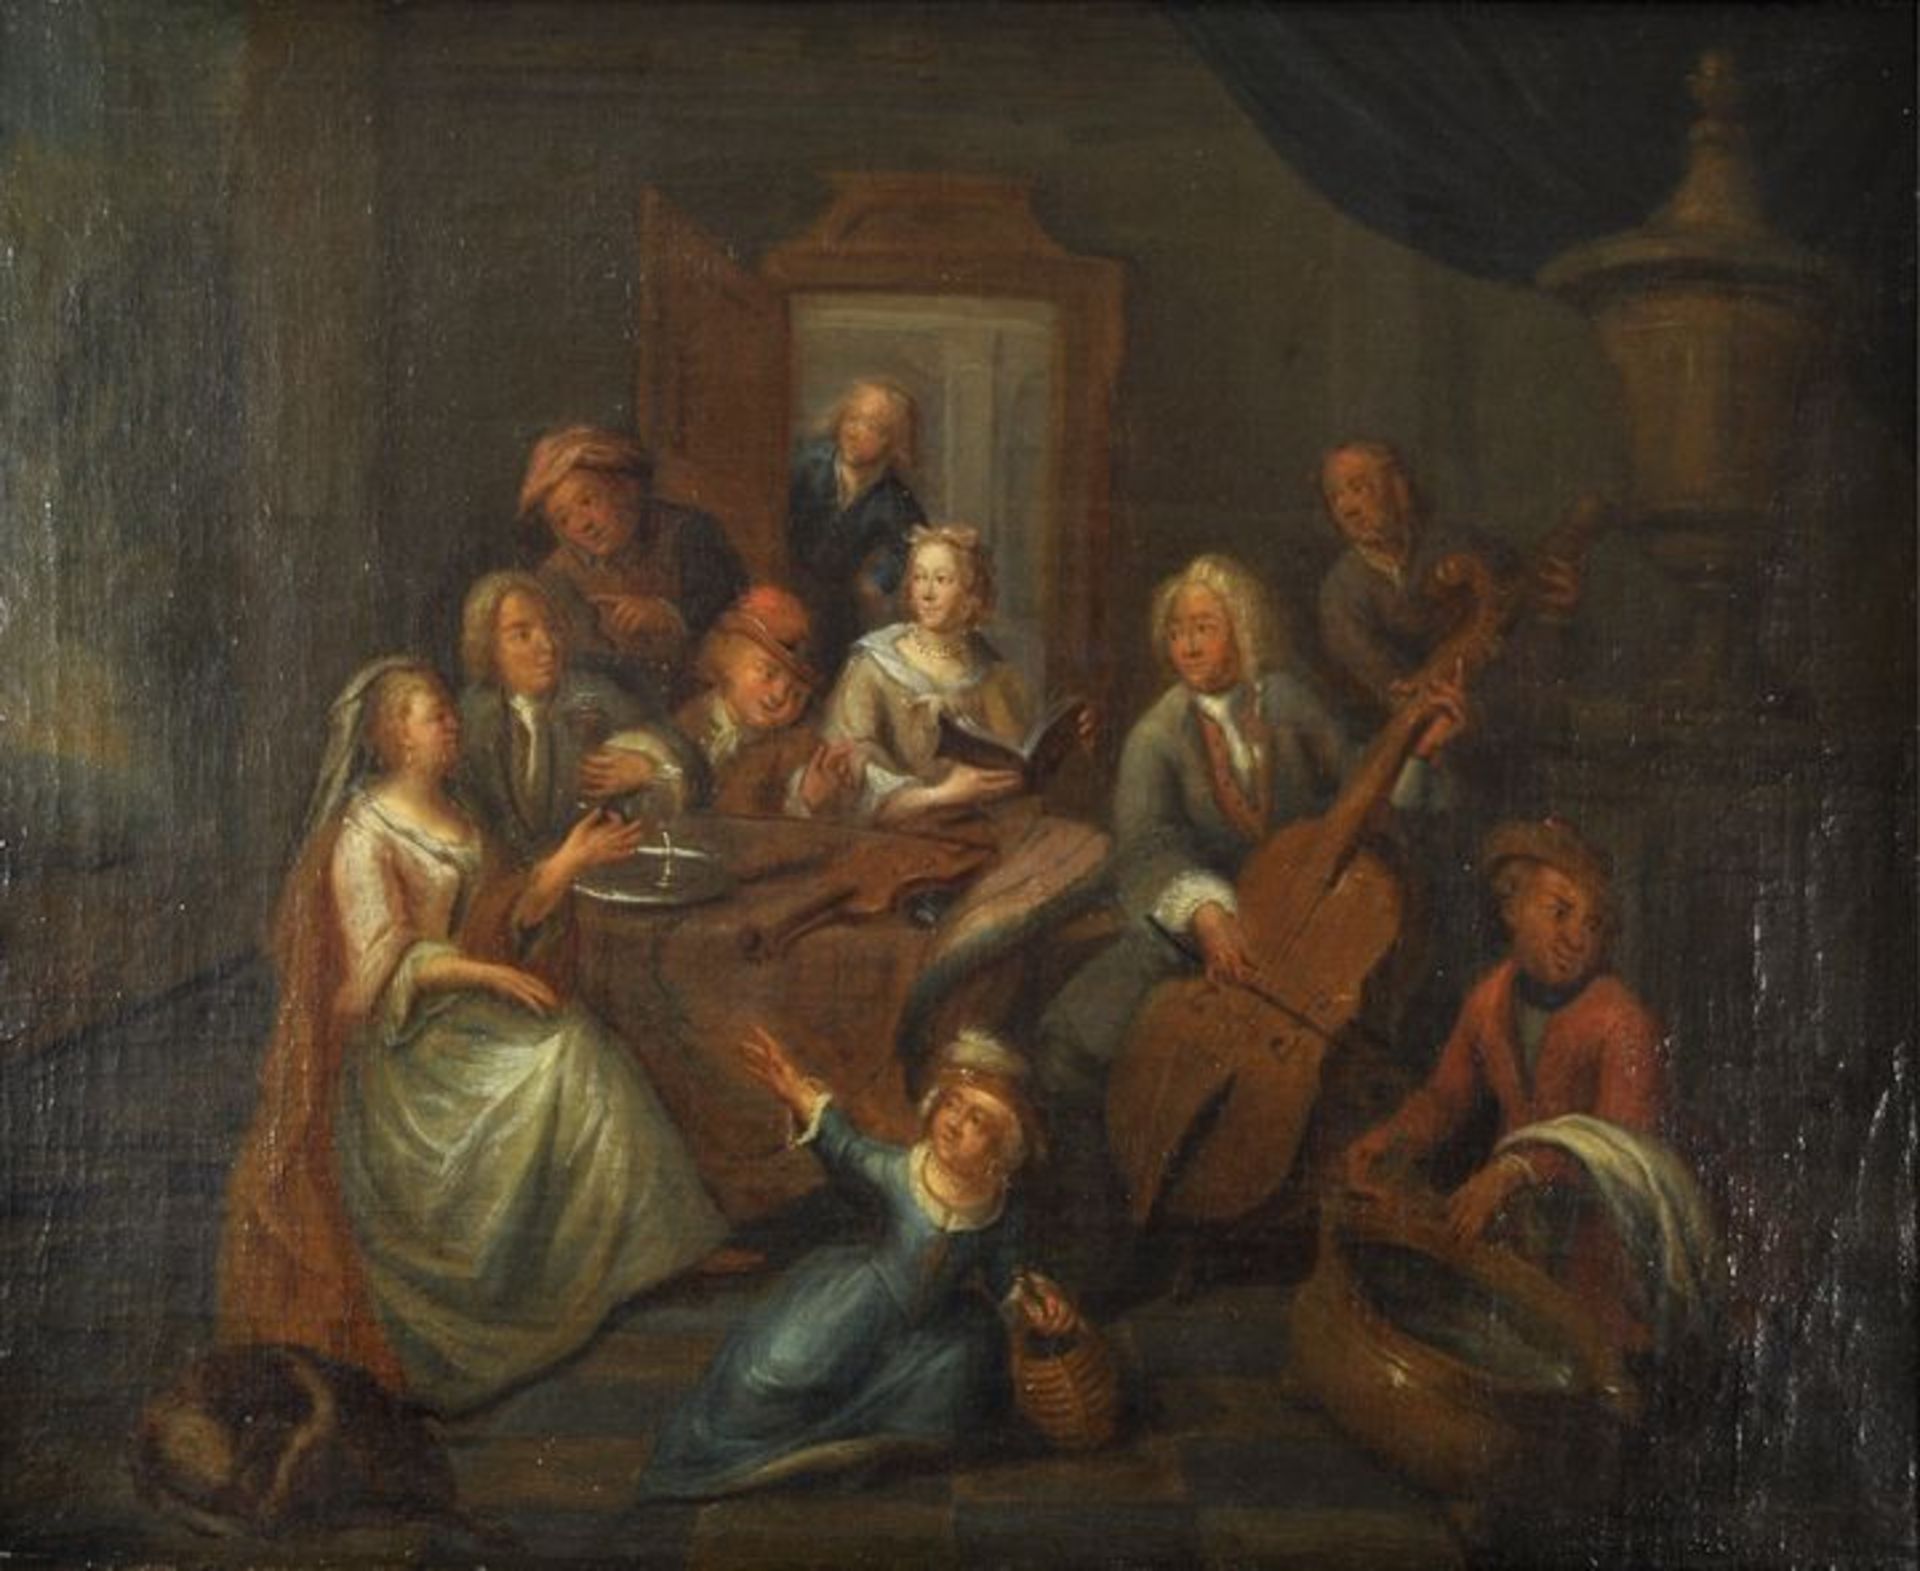 Blommaerdt, Maximilian. Tätig um 1700 Antwerpen, zugeschr. Musikalische Gesellschaft. Öl auf